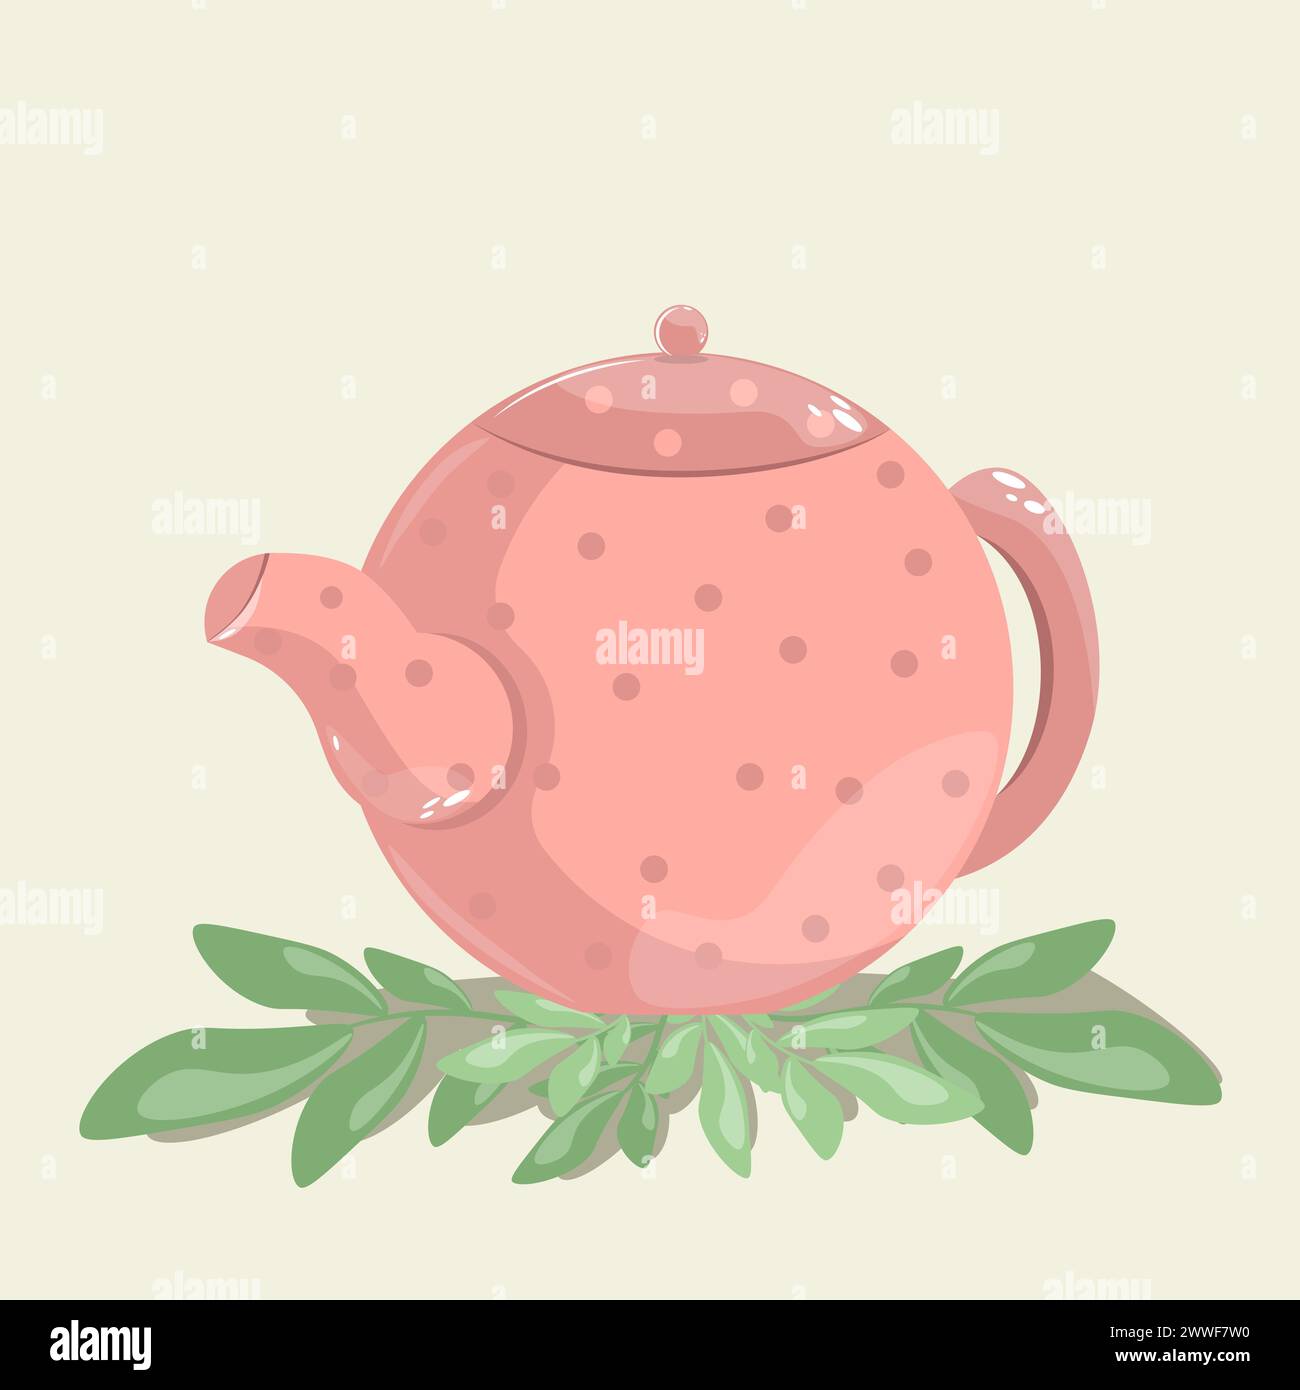 Teiera rosa con pois di polka. Una teiera per preparare bevande calde. Utensile in ceramica per bollire l'acqua per tè e caffè. Vettore piatto cartoni animati Illustrazione Vettoriale